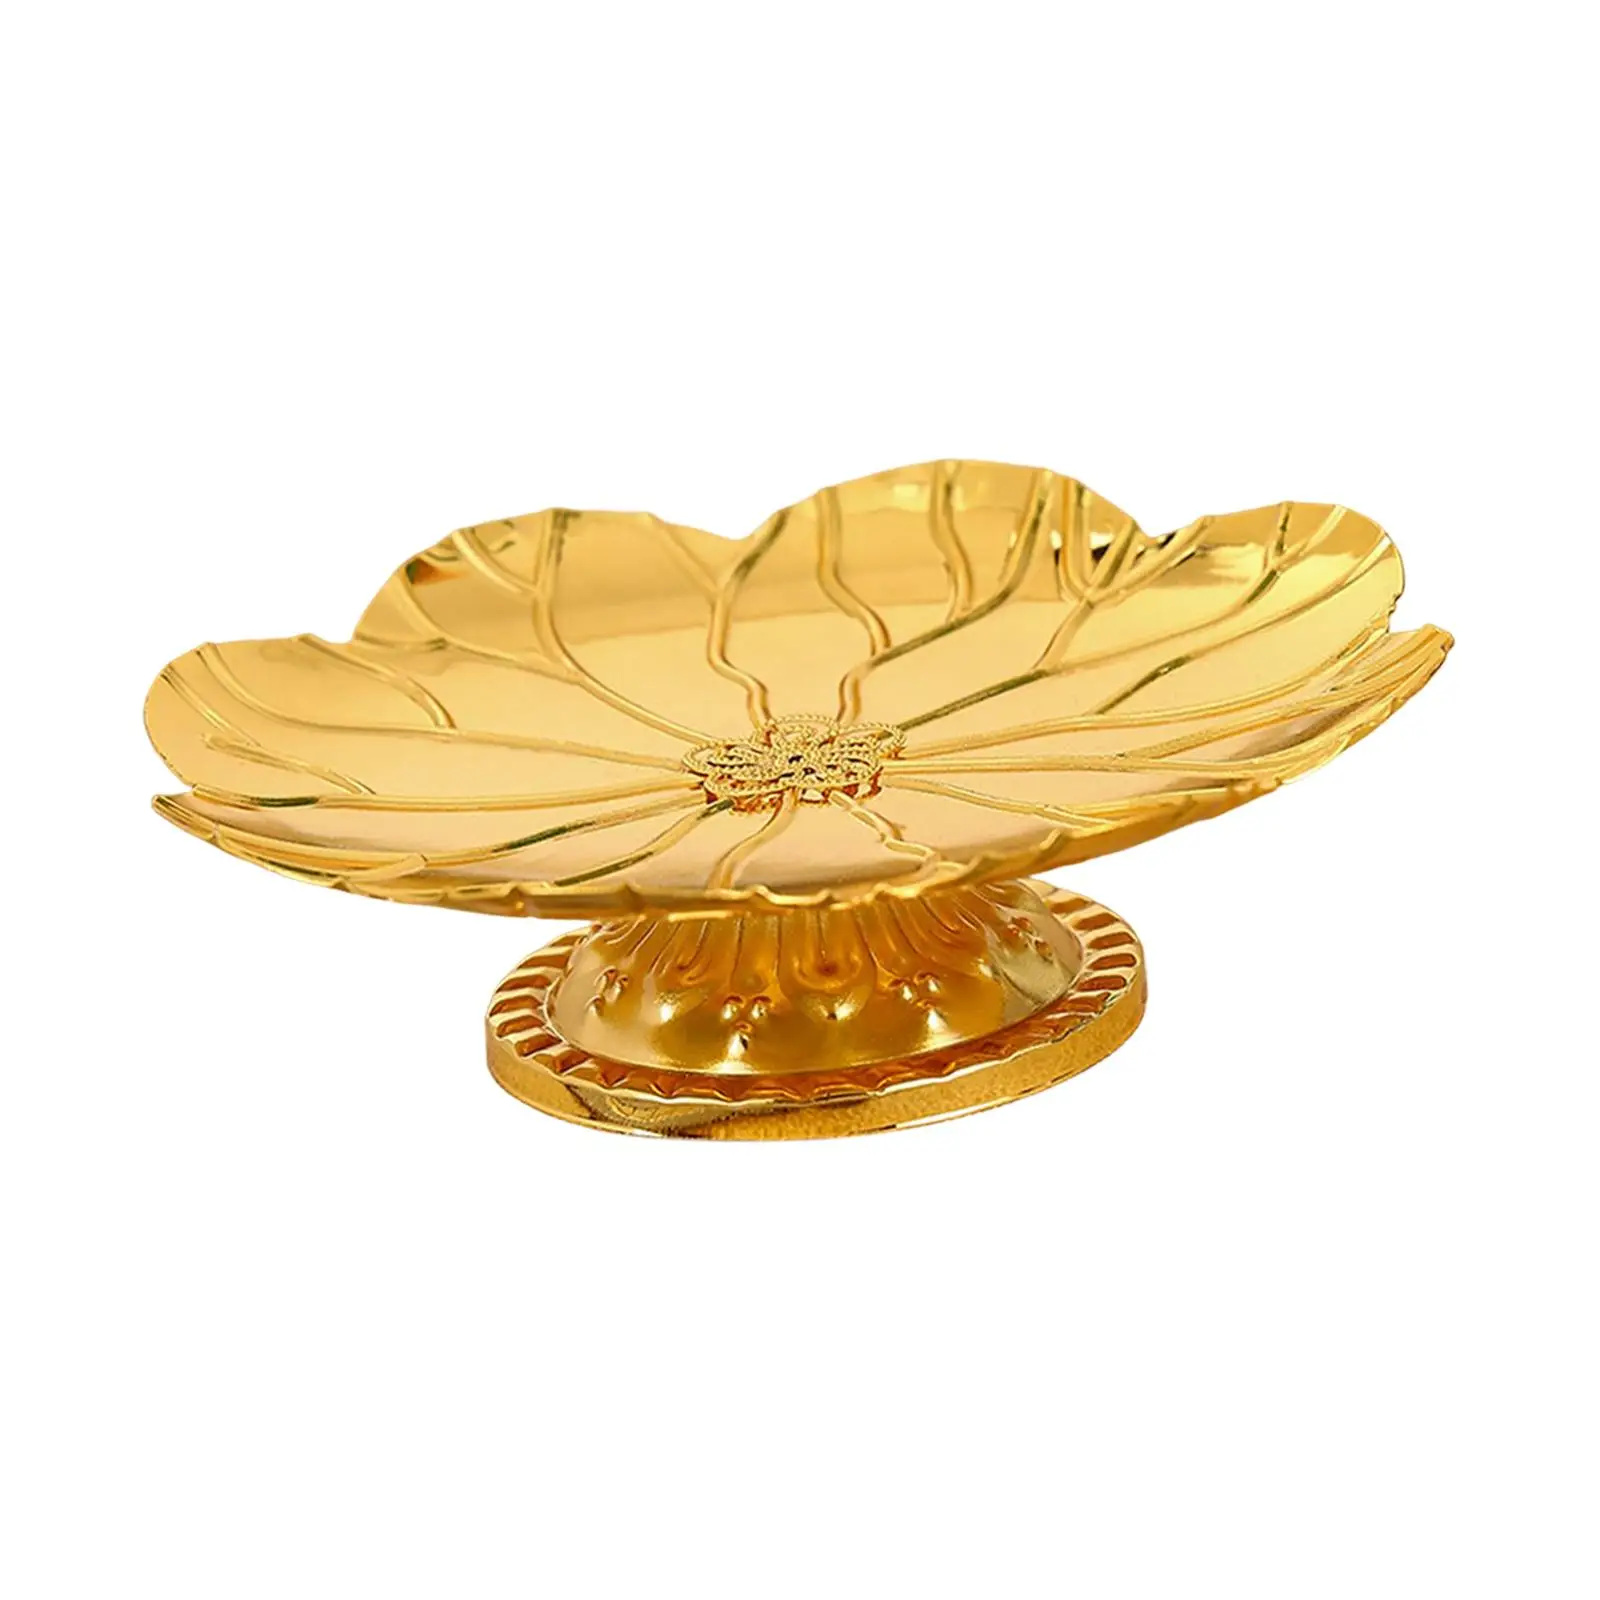 Gold Pedestal Bowl Candy Storage Basket Table Centerpiece Desktop Tray Cupcake Holder for Festivals Decoration